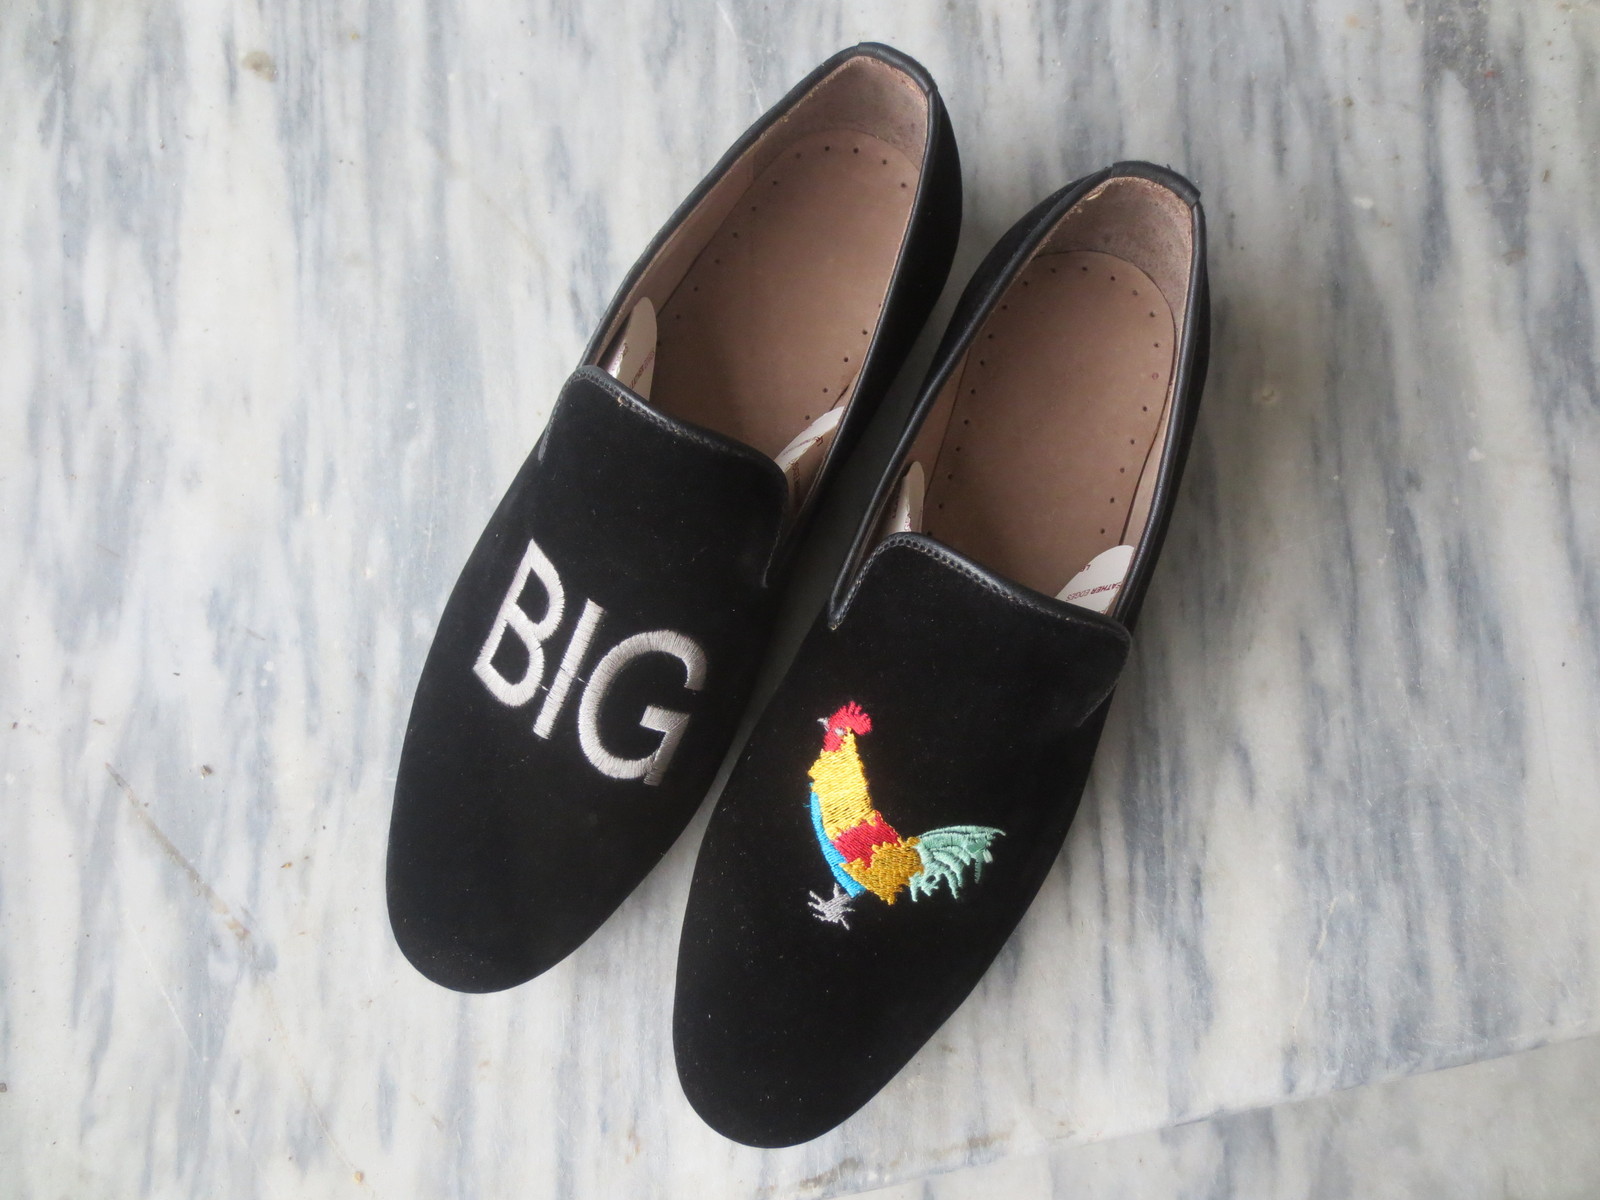 NEW Handmade Men's Black Color Shoes, Men's New Velvet Loafer Slip On Fashion Sh